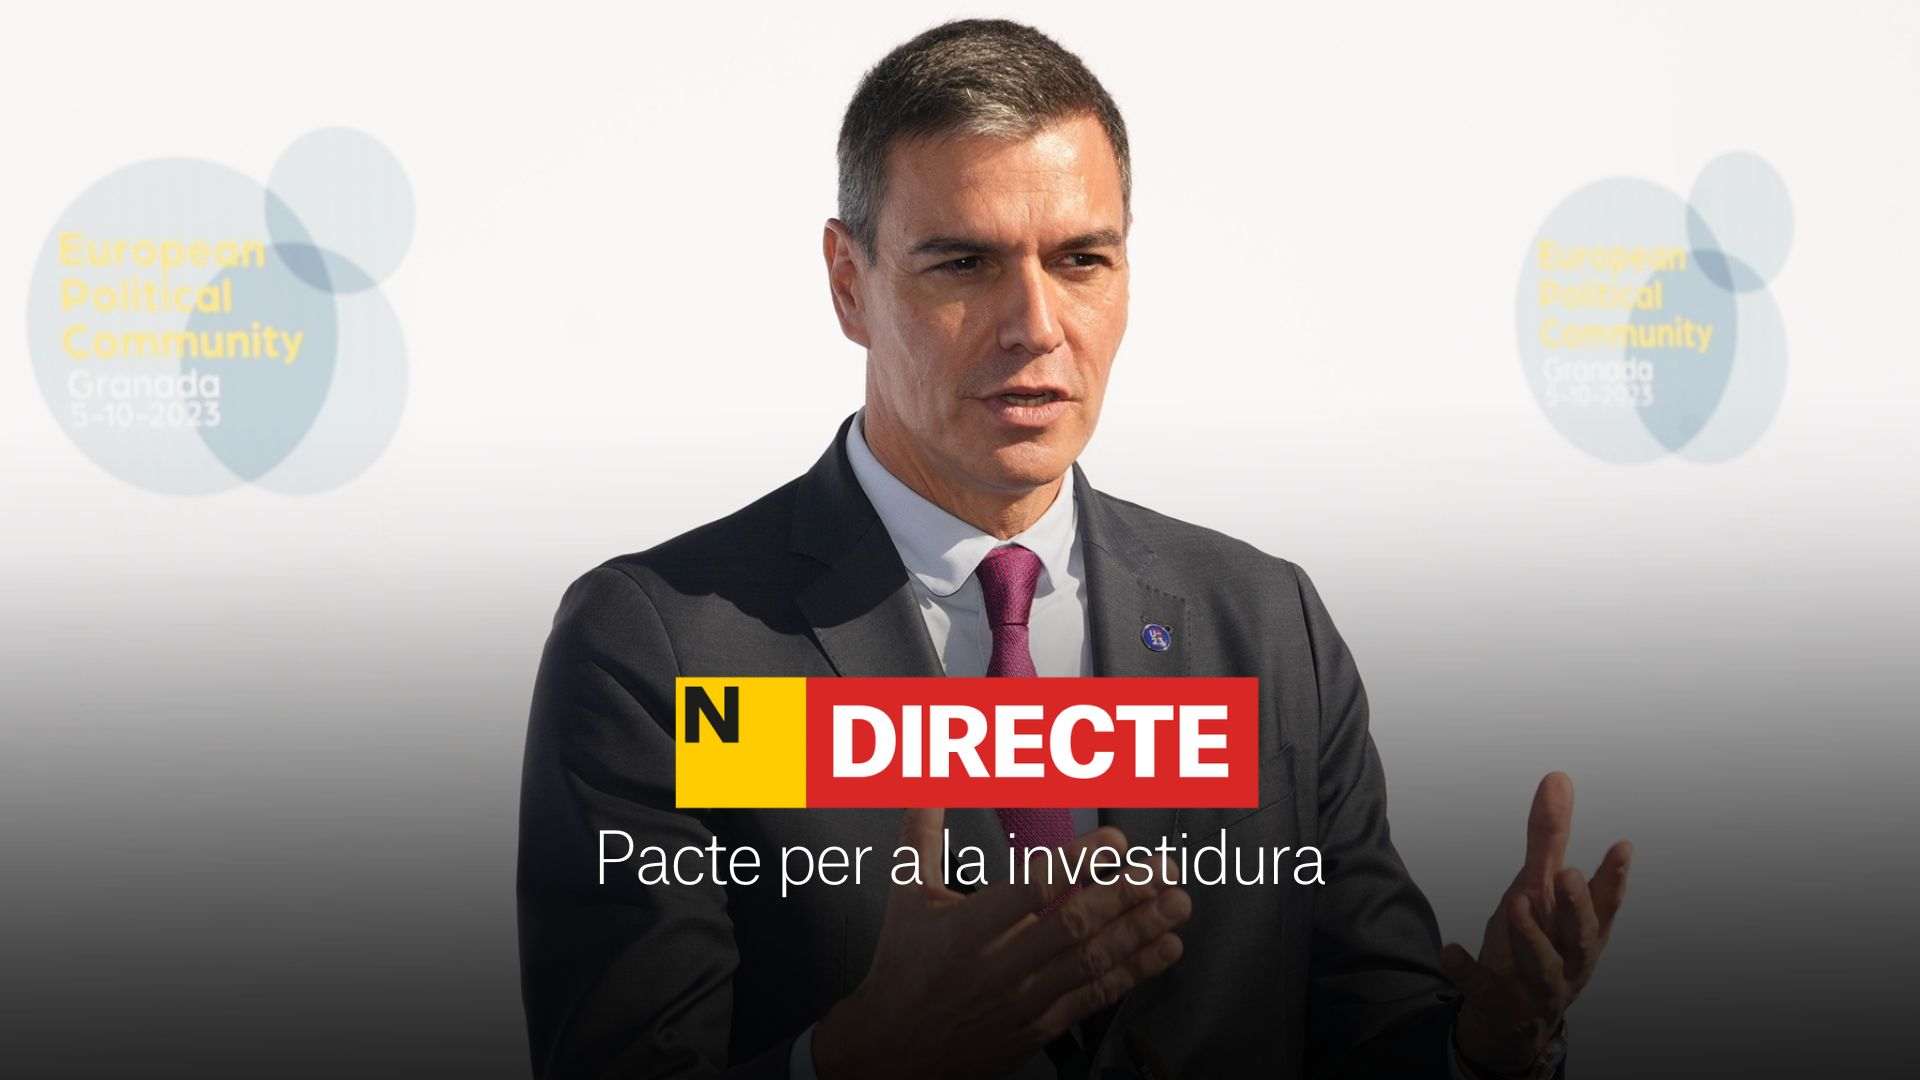 Pactes i acords per a la investidura de Pedro Sánchez, DIRECTE | Últimes notícies del 11 de novembre